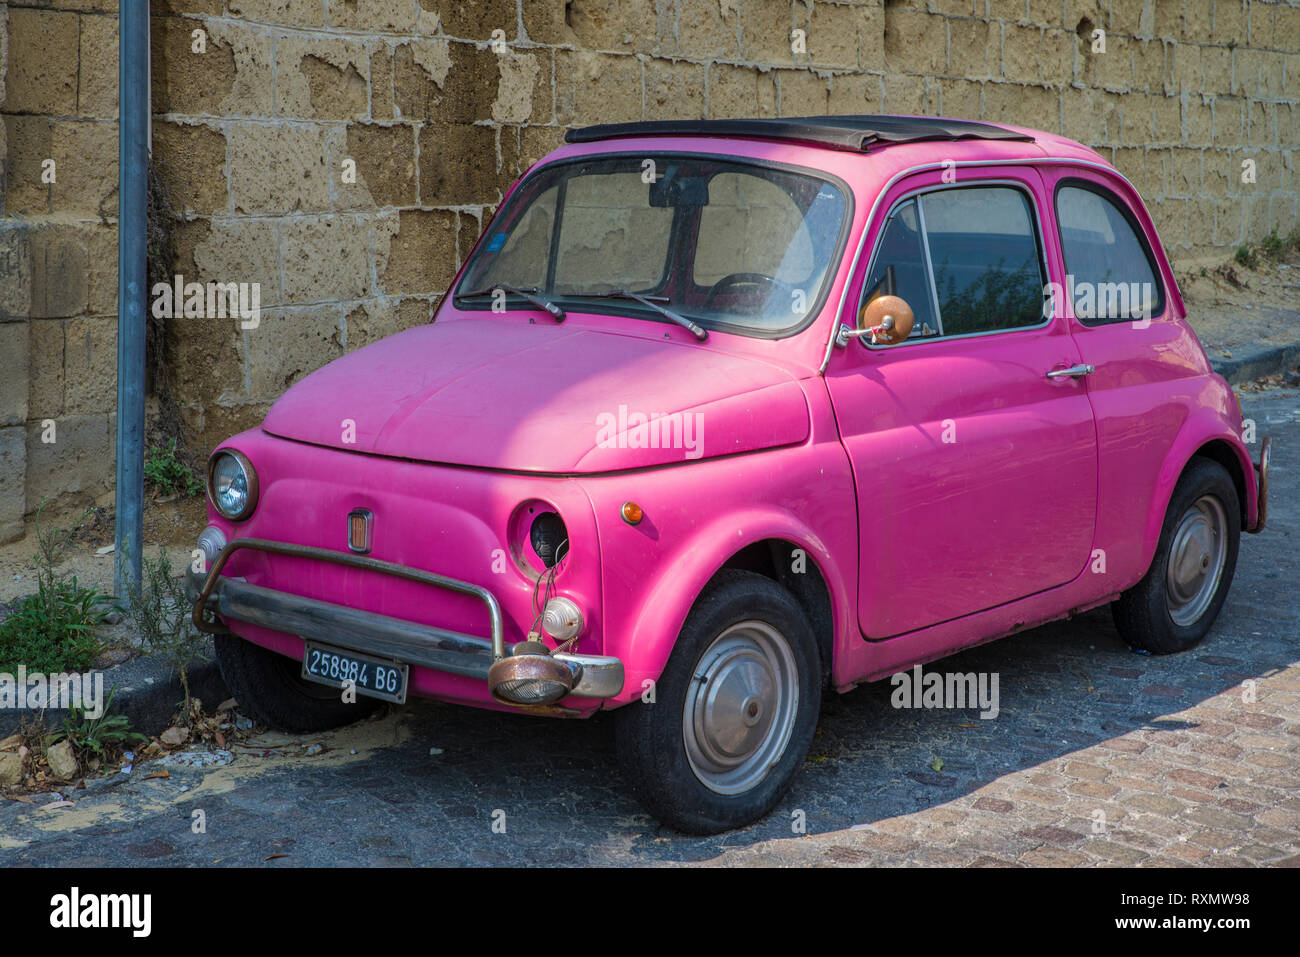 Naples, Italie - 14 août 2015 : Oldtimer voiture Fiat Nuova 500 Rose se tient dans les rues de Naples. Ses phares sont cassés. Banque D'Images